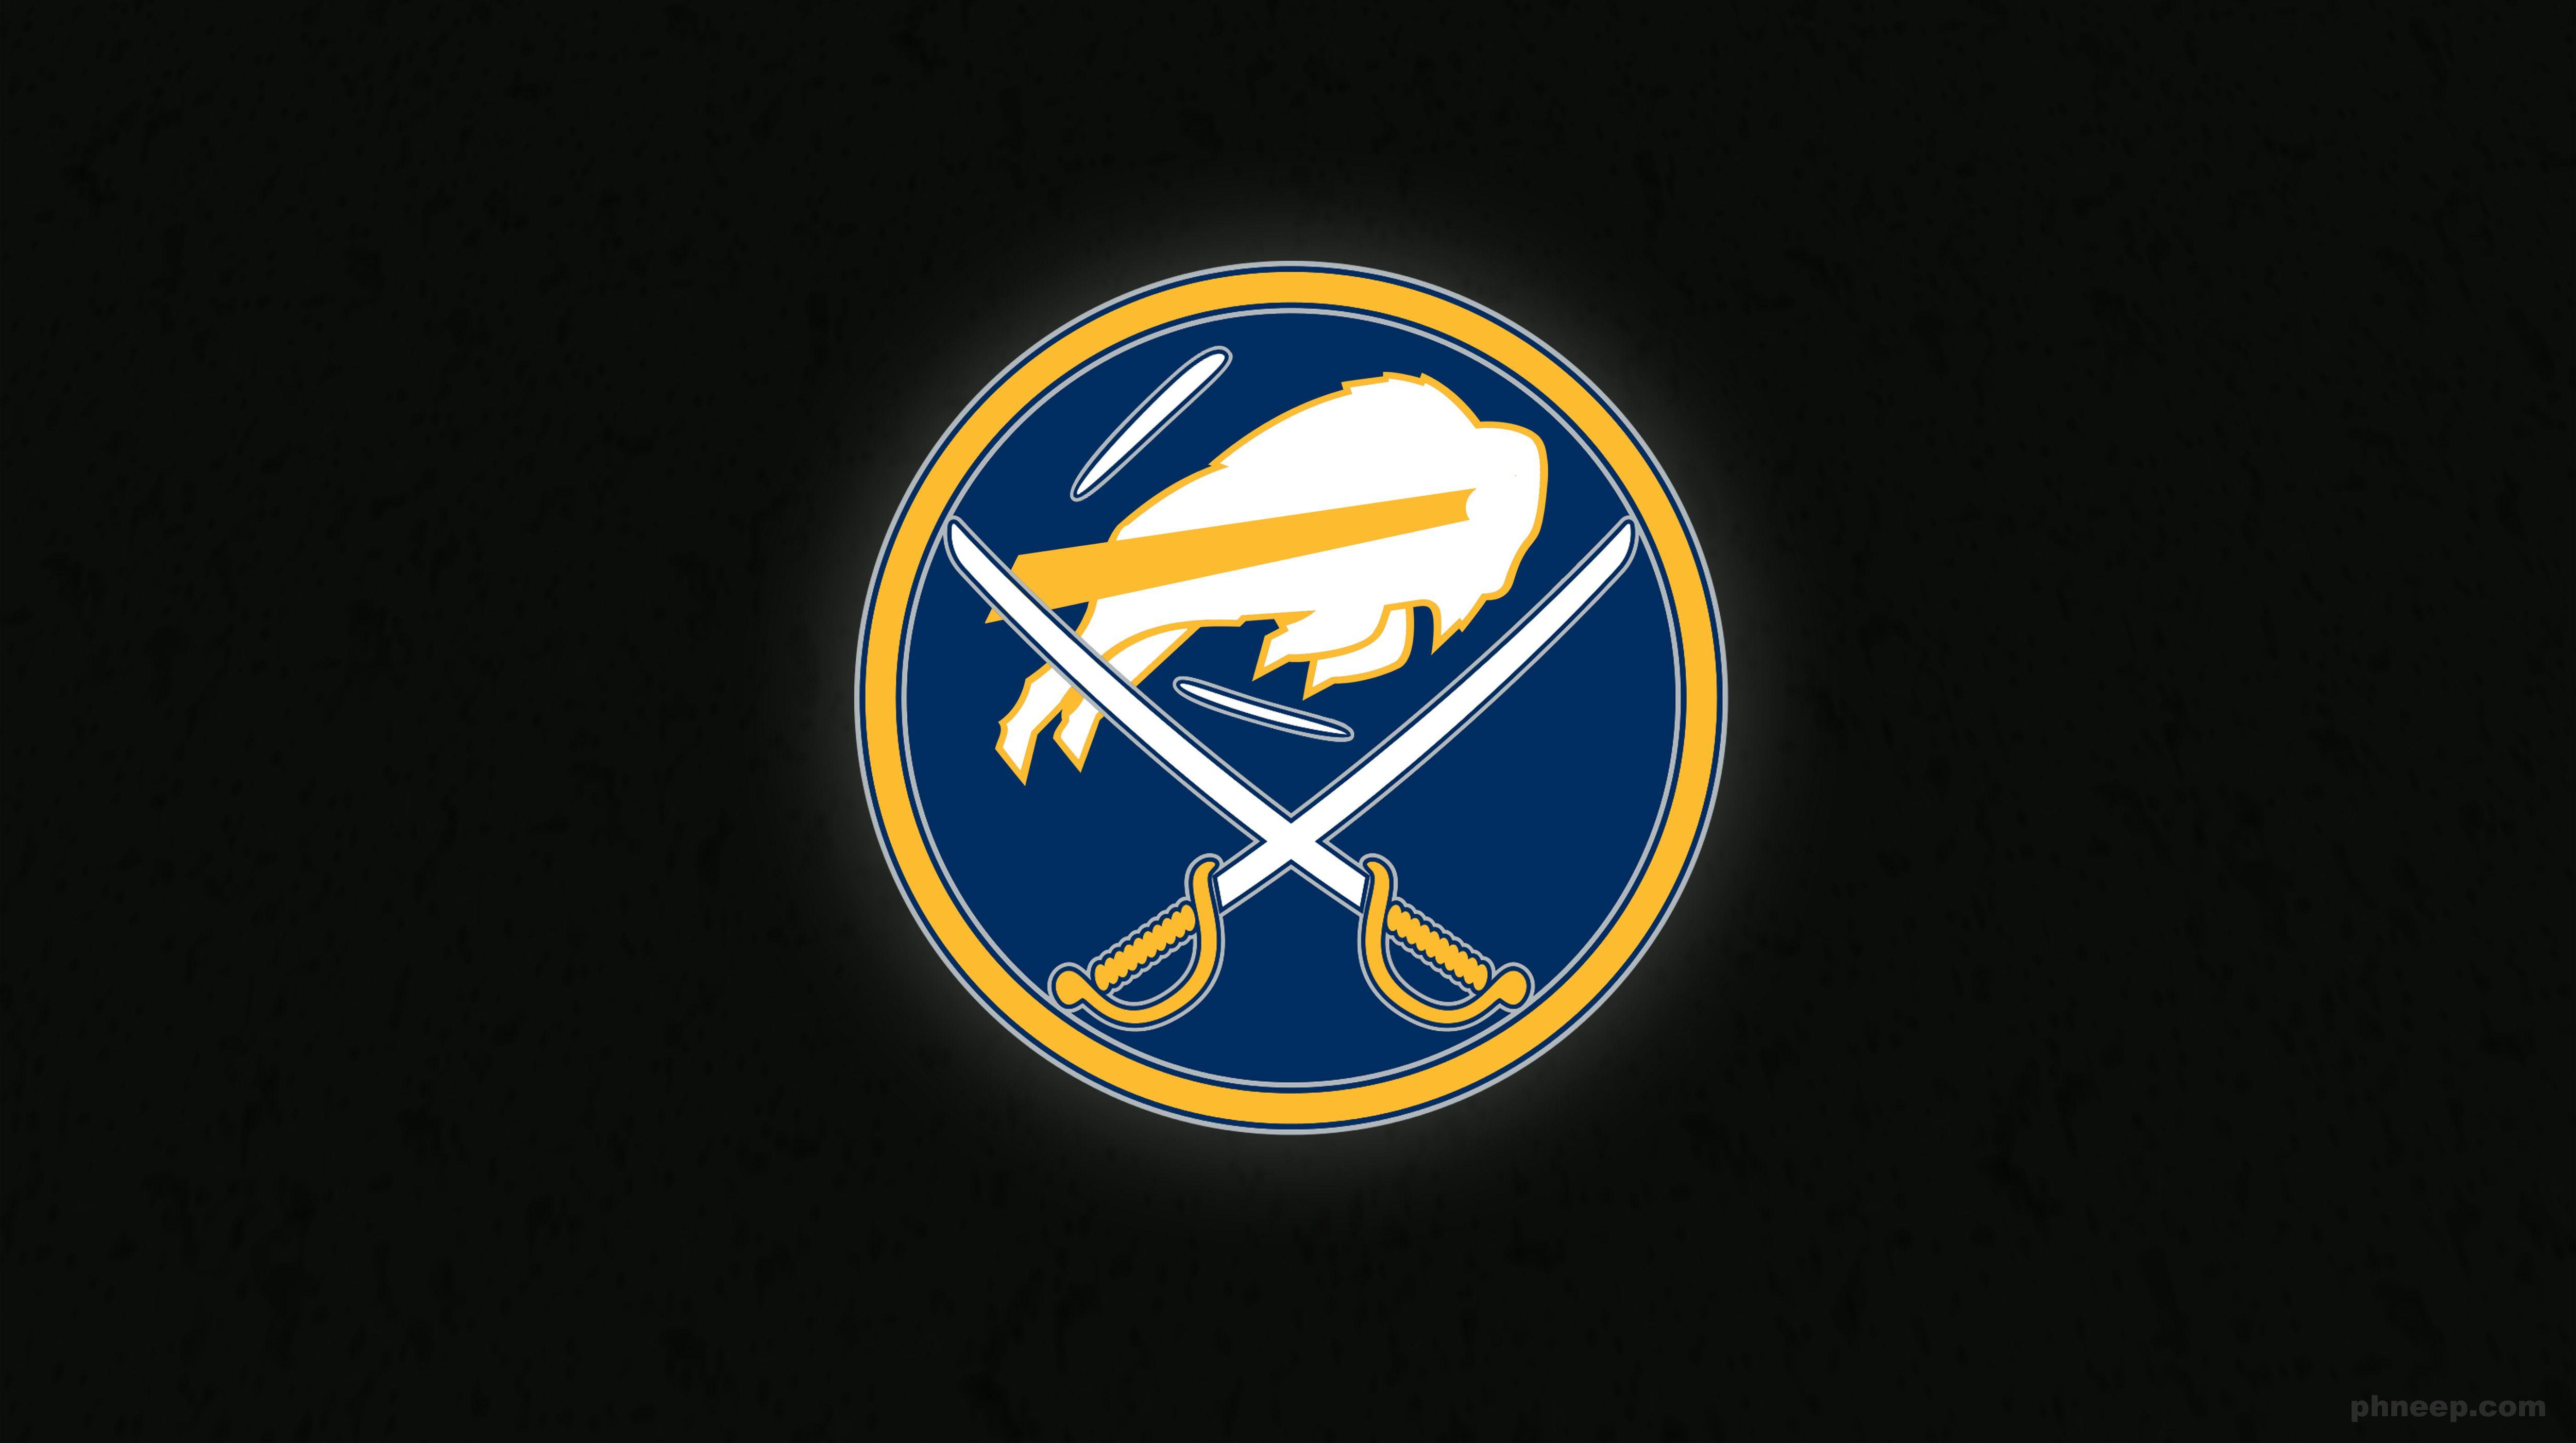 Buffalo Bills Logo - Bills / Sabres logo mashup : buffalobills